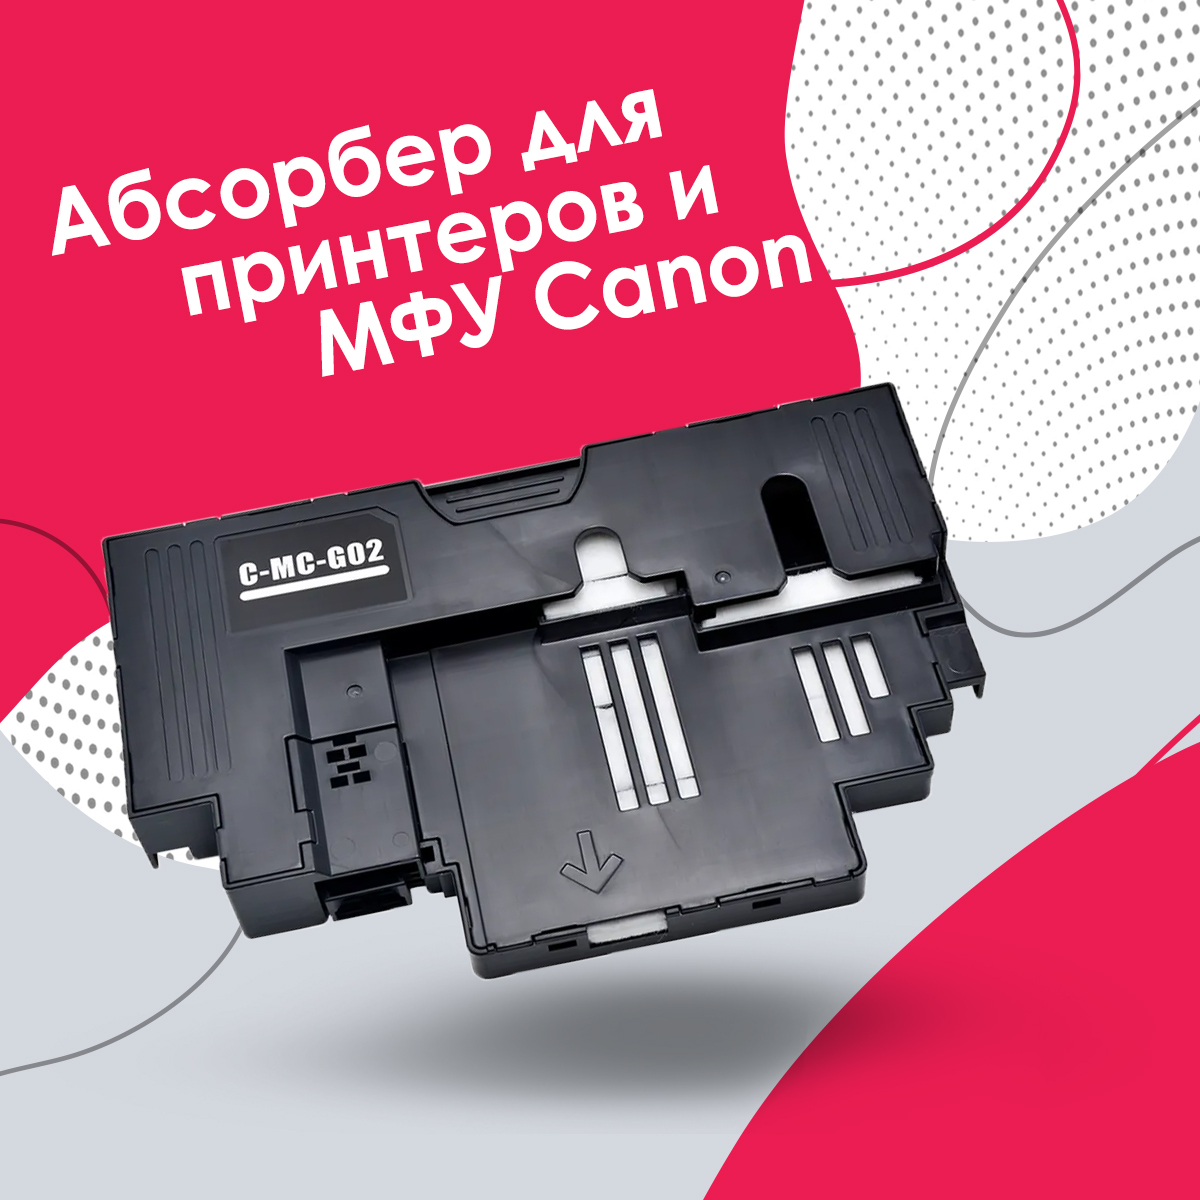 Абсорбер для принтера Canon MC-G02 памперс / поглотитель чернил G1420, G2420, G3420, G2460, купить в Москве, цены в интернет-магазинах на Мегамаркет